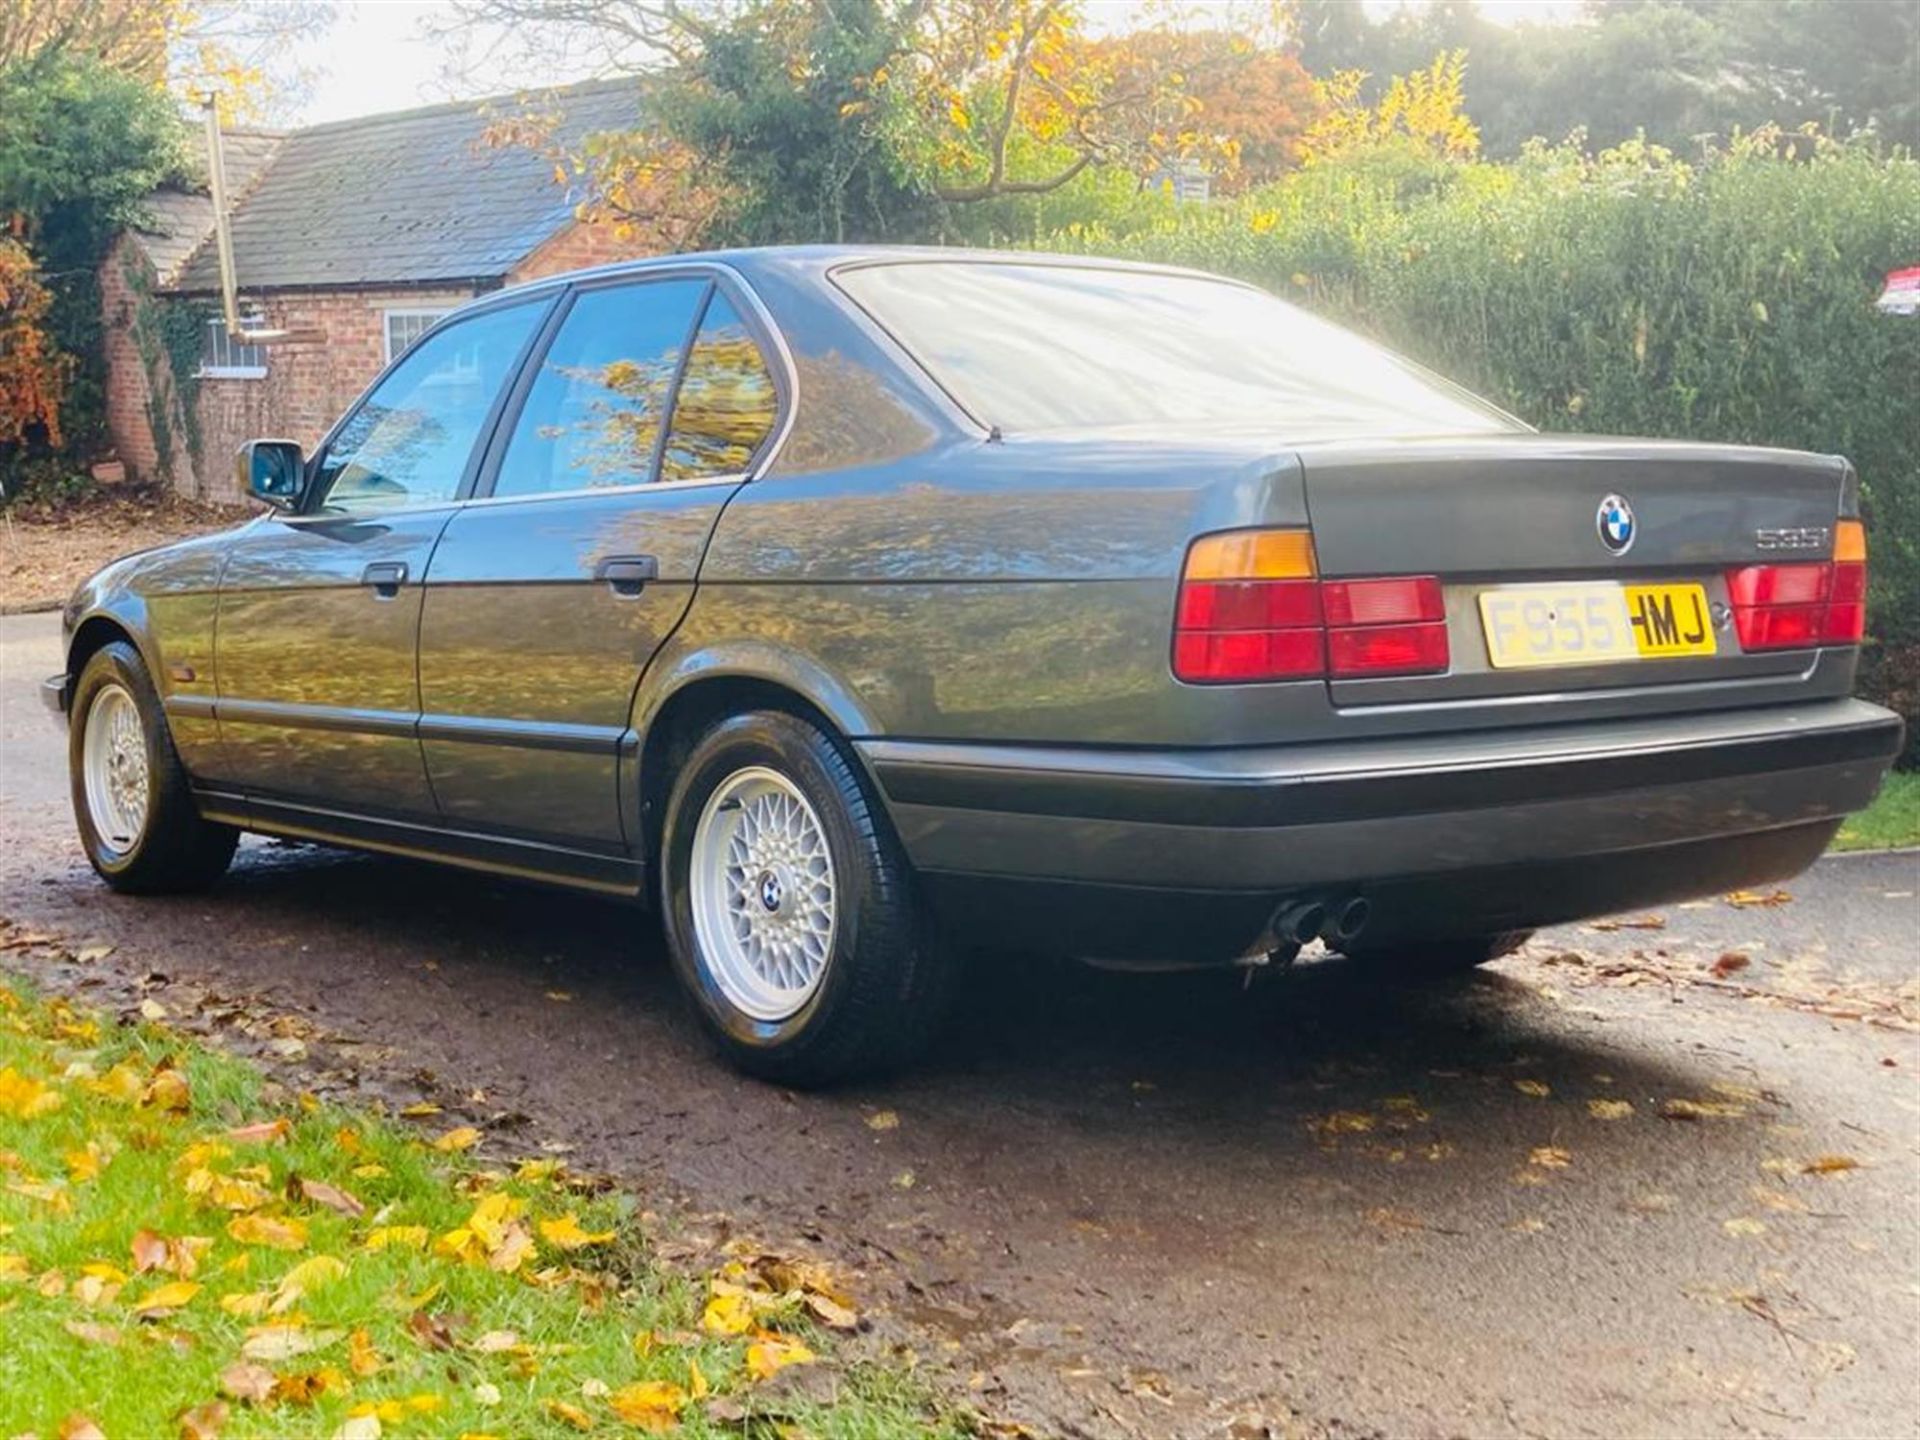 1988 BMW 535i (E34) - Image 4 of 10